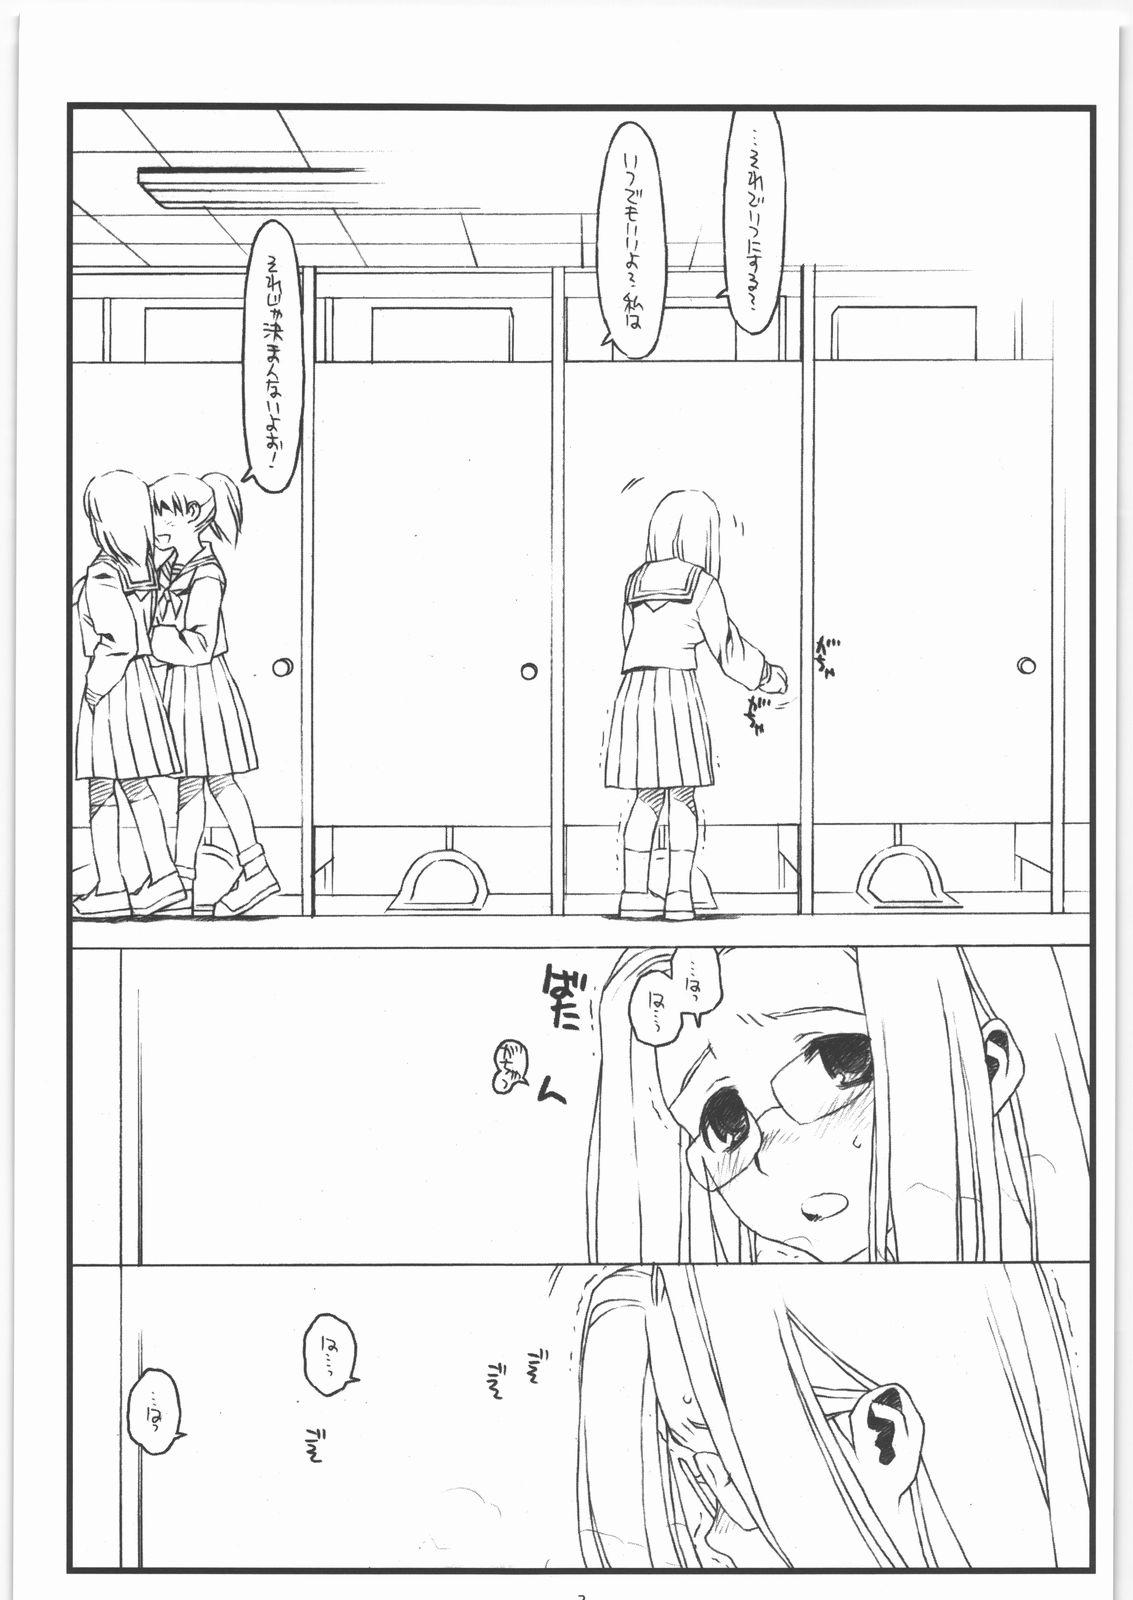 Weird Kamisama no Inai Tsuki - Kamichu Tetas - Page 2